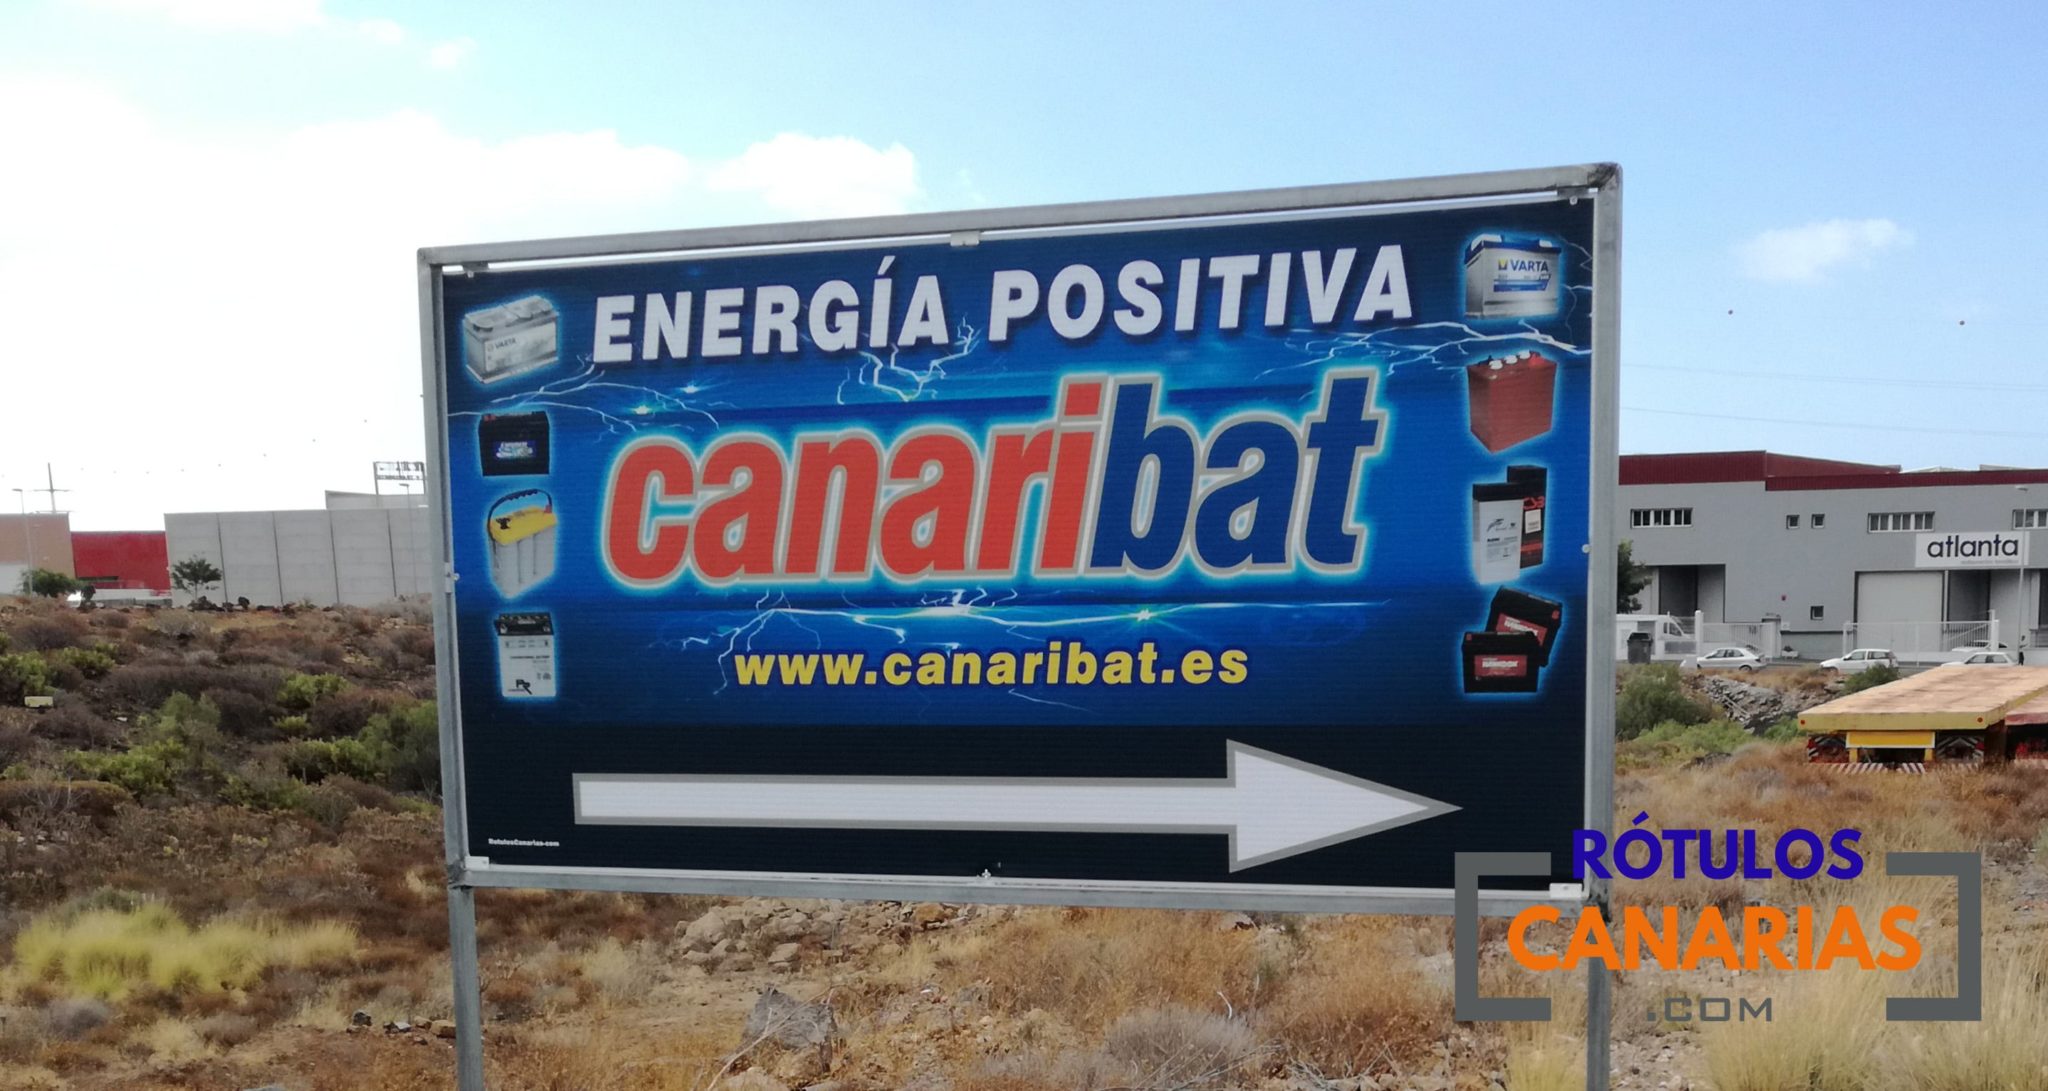 Valla Publicitaria - Canaribat